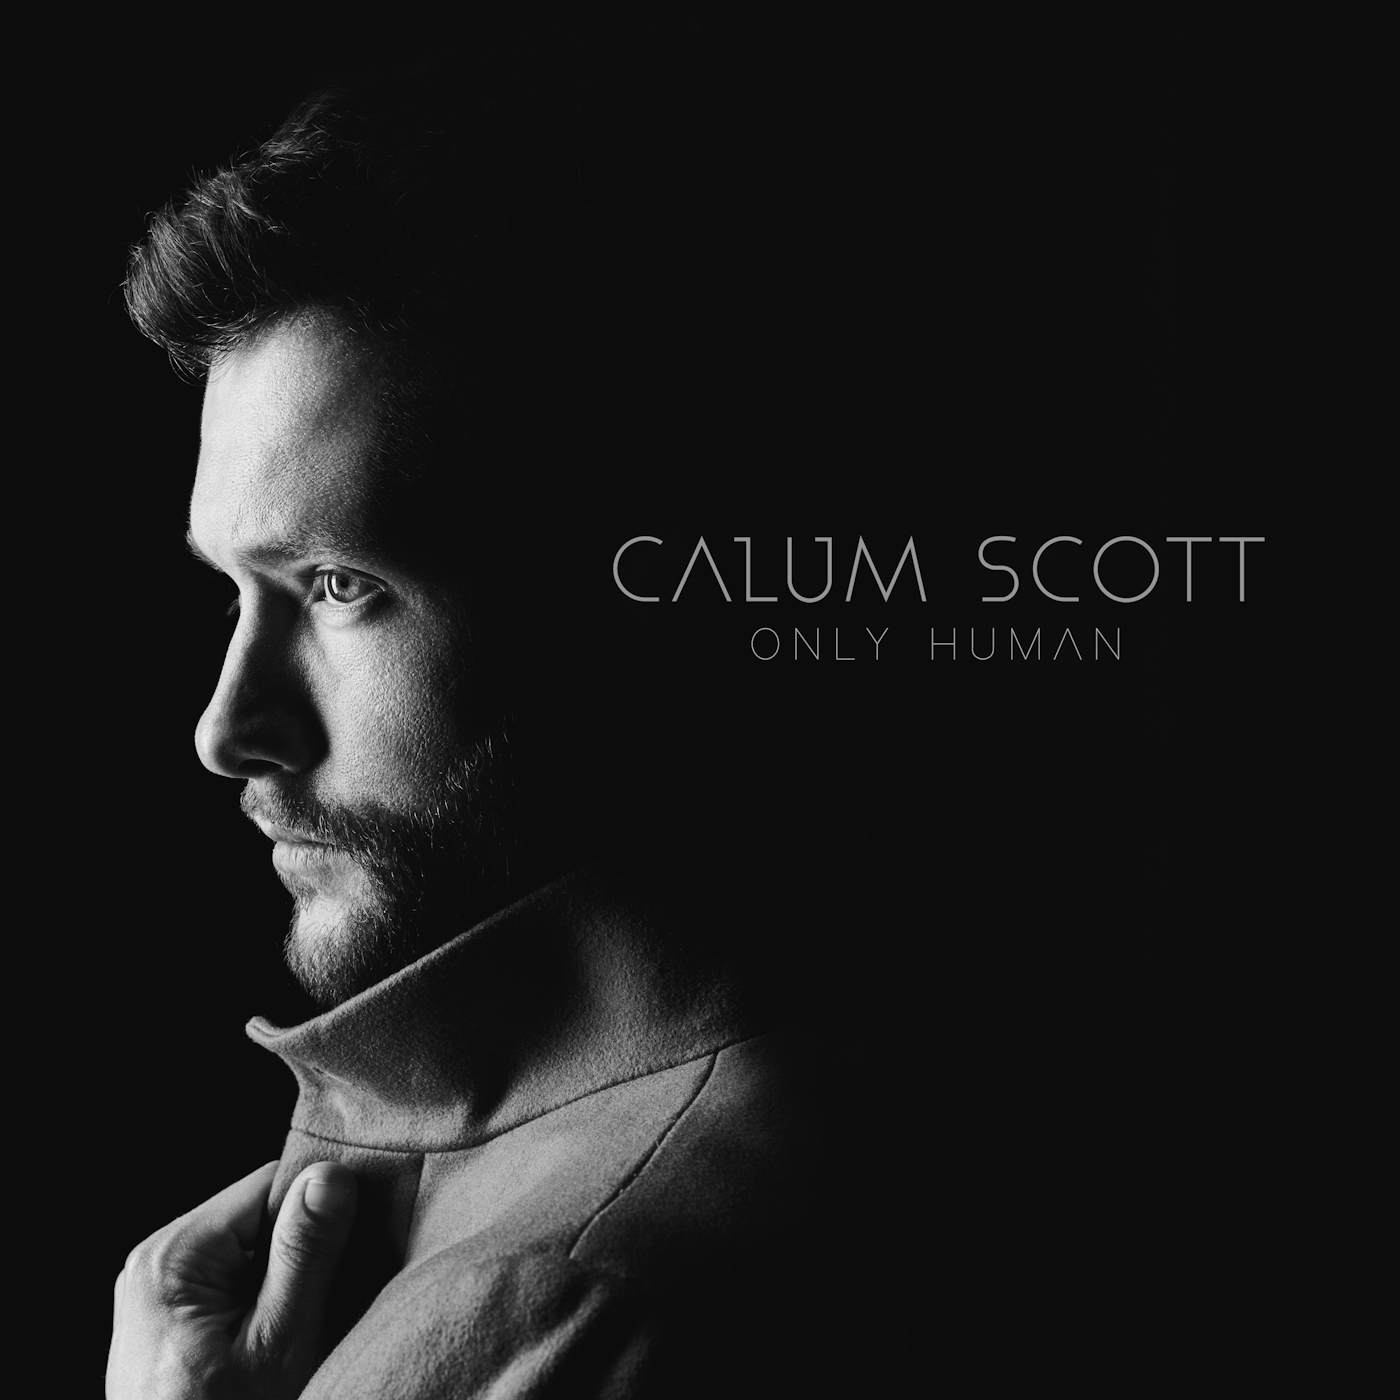 Calum Scott ONLY HUMAN CD